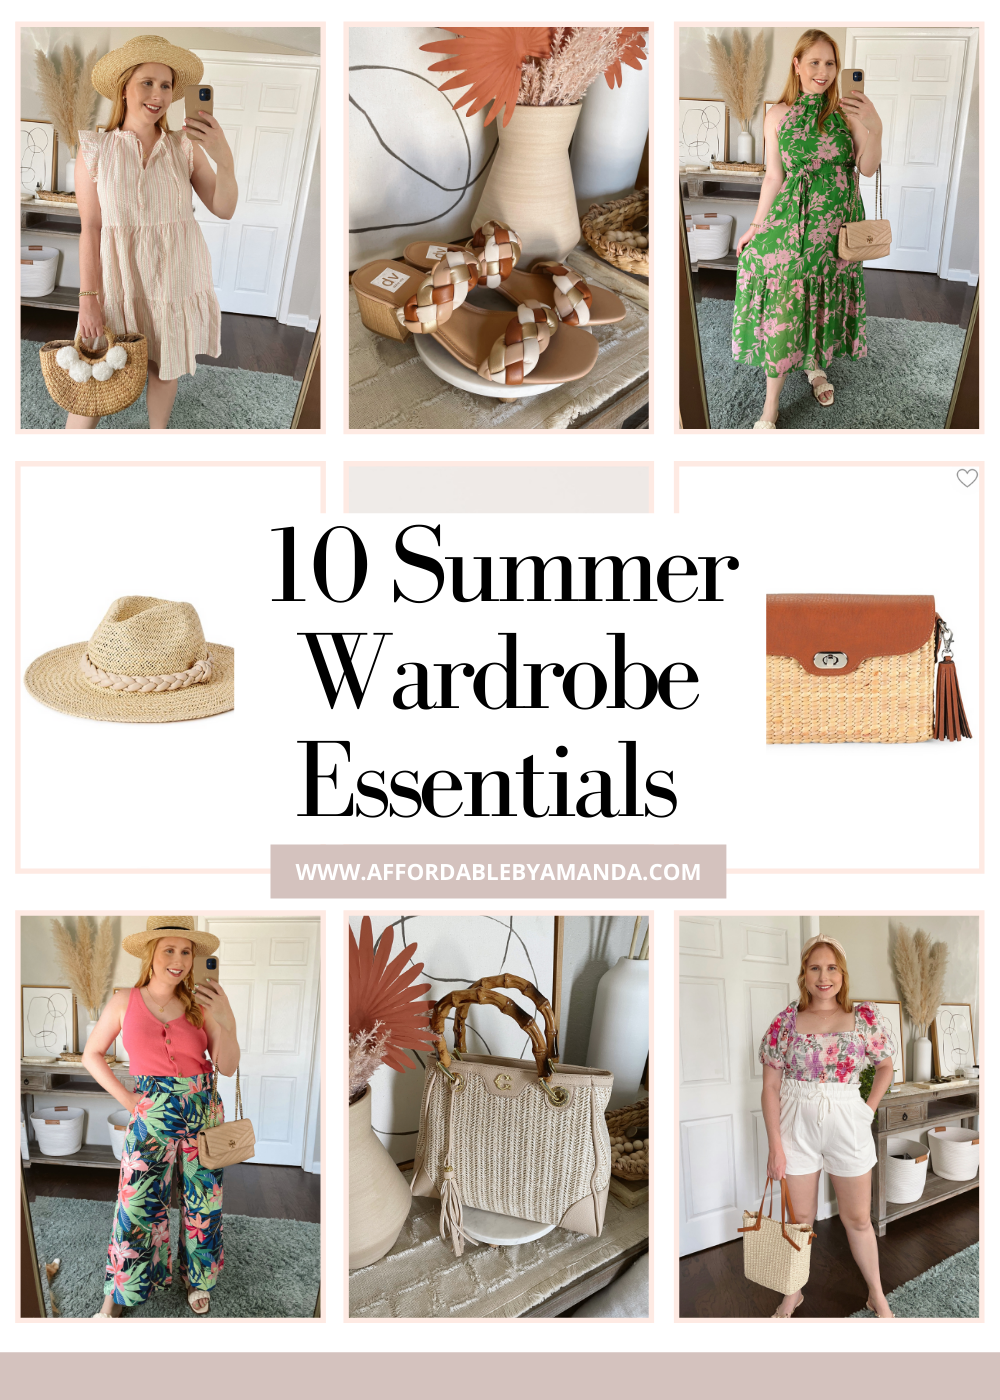 10 Summer Wardrobe Essentials 2022 - Affordable by Amanda